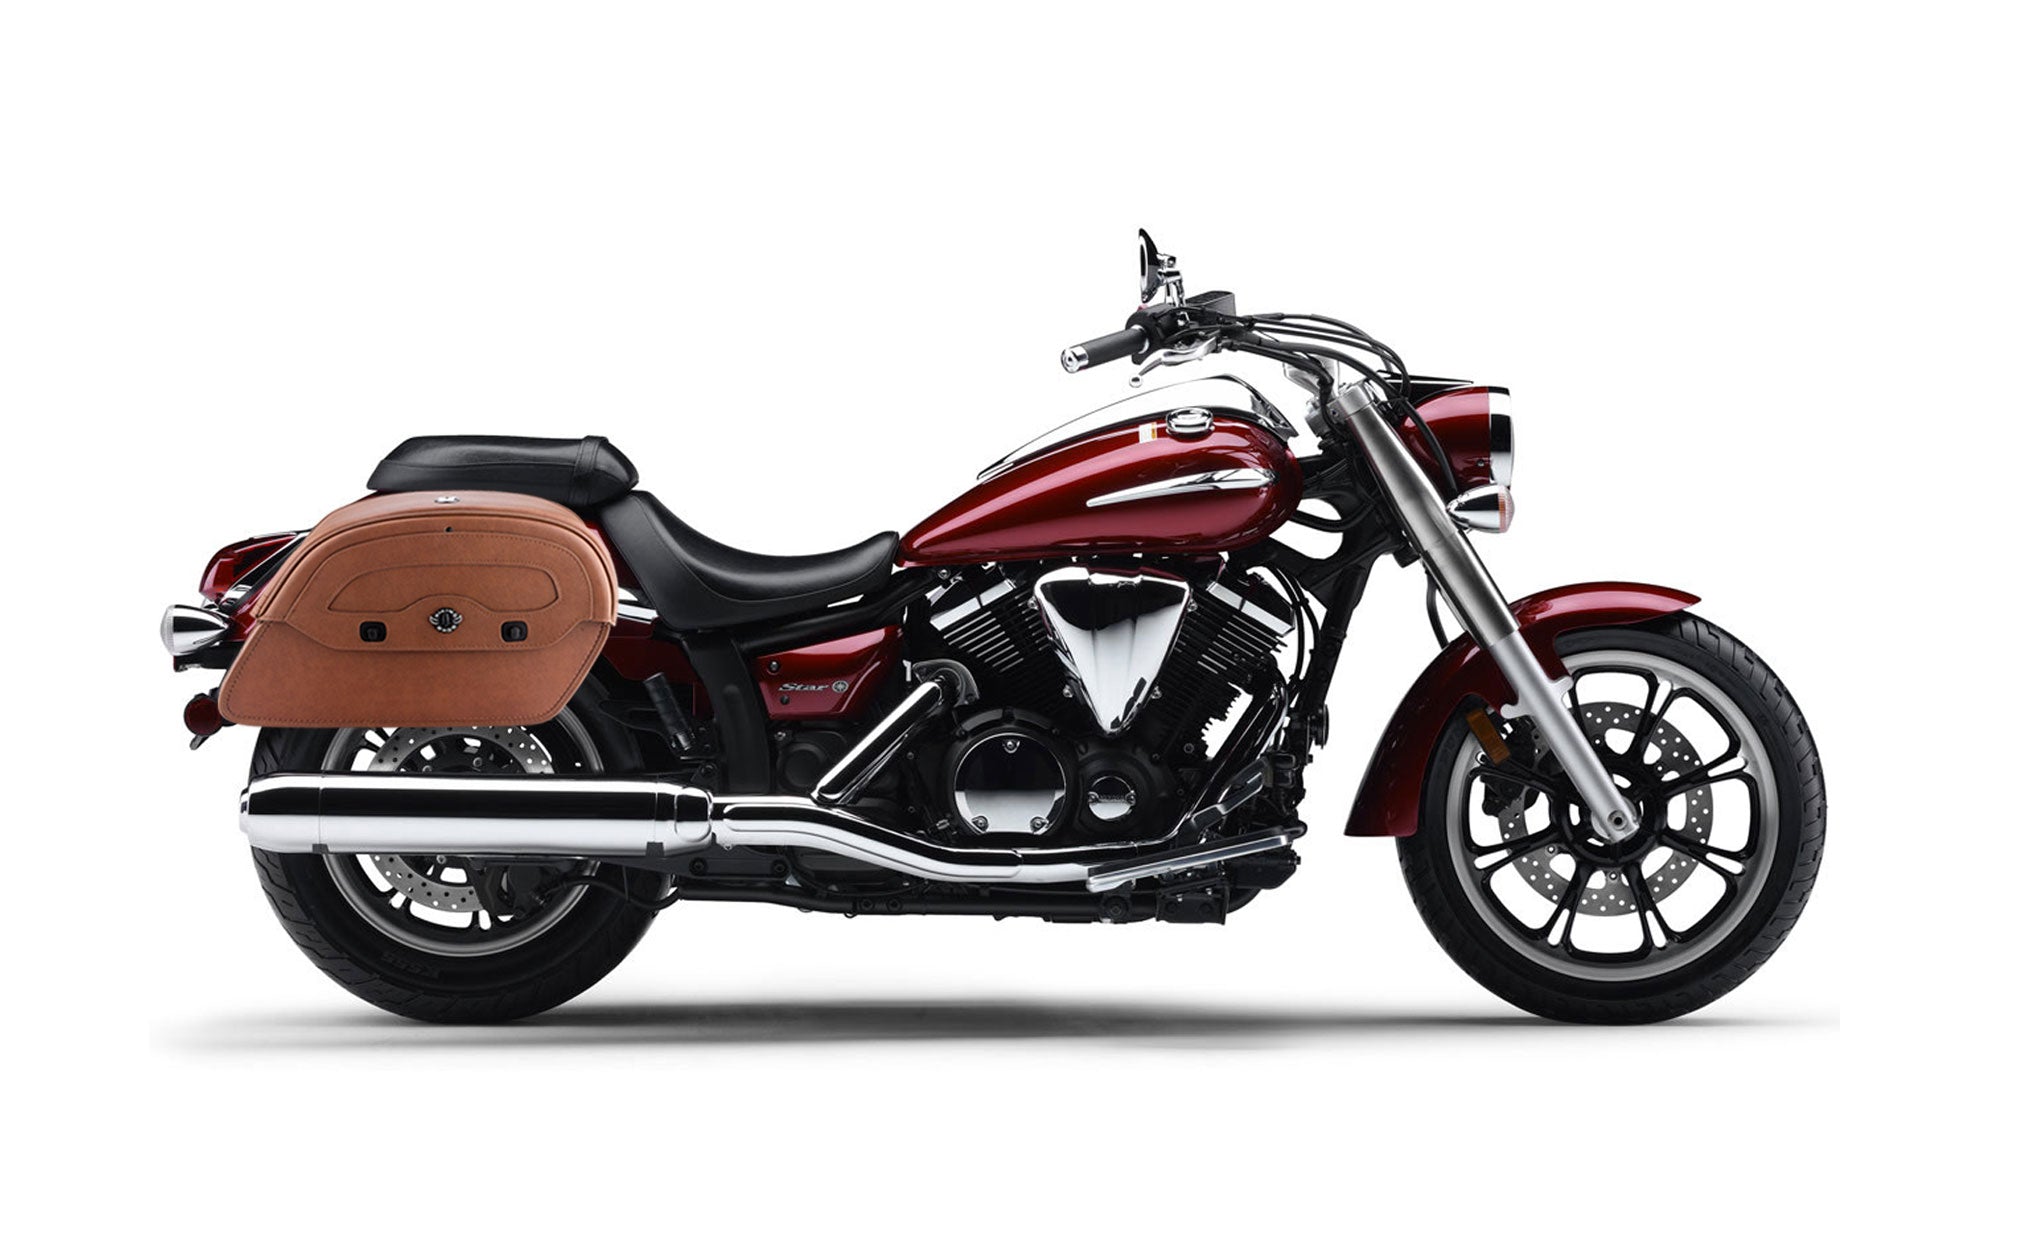 Viking Warrior Brown Large Yamaha V Star 950 Leather Motorcycle Saddlebags on Bike Photo @expand